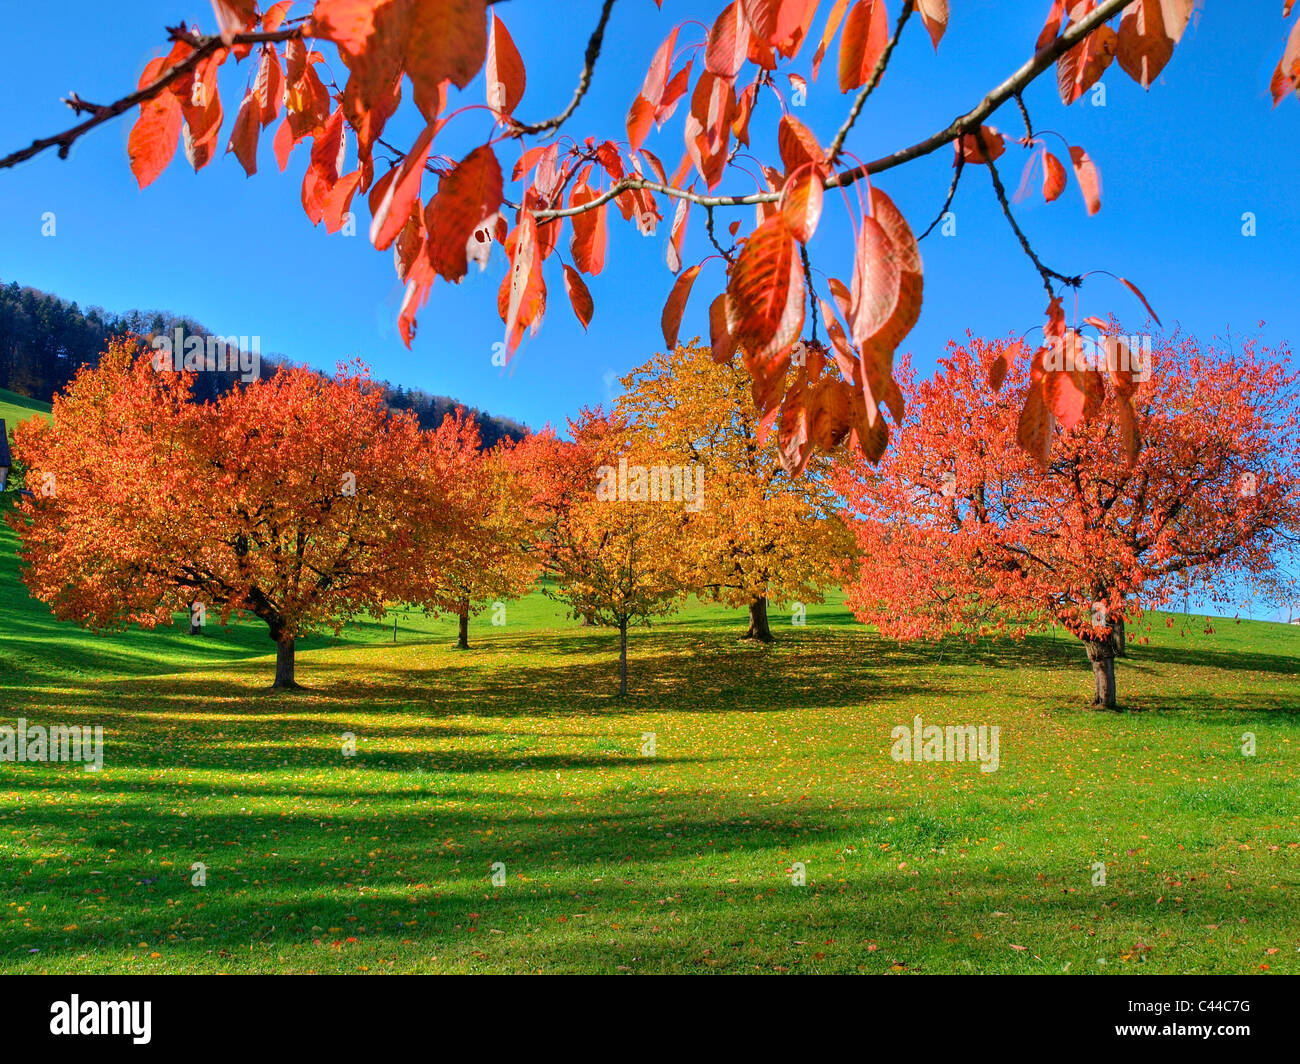 Bäume, Blätter, Herbst, Kanton Zürich, Schweiz, Herbst Bäume, Farben ...